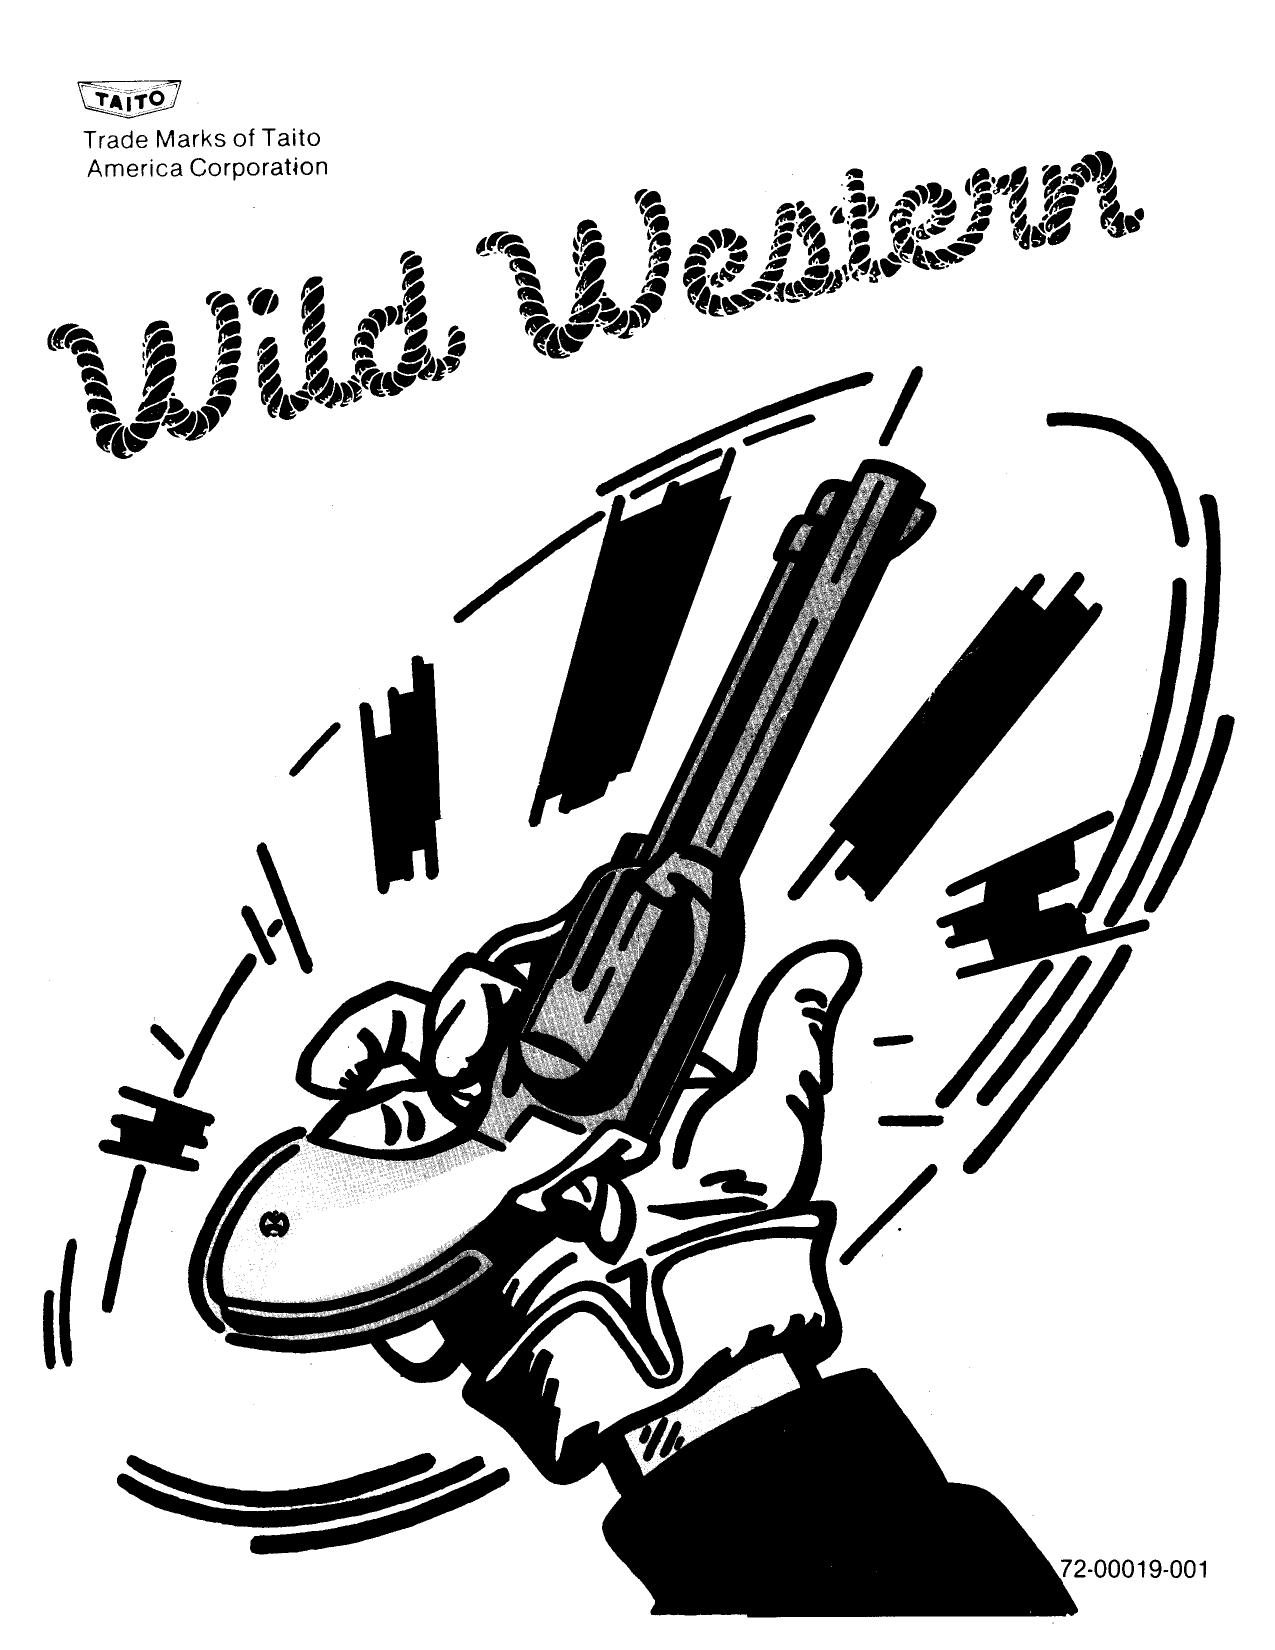 Wild Western